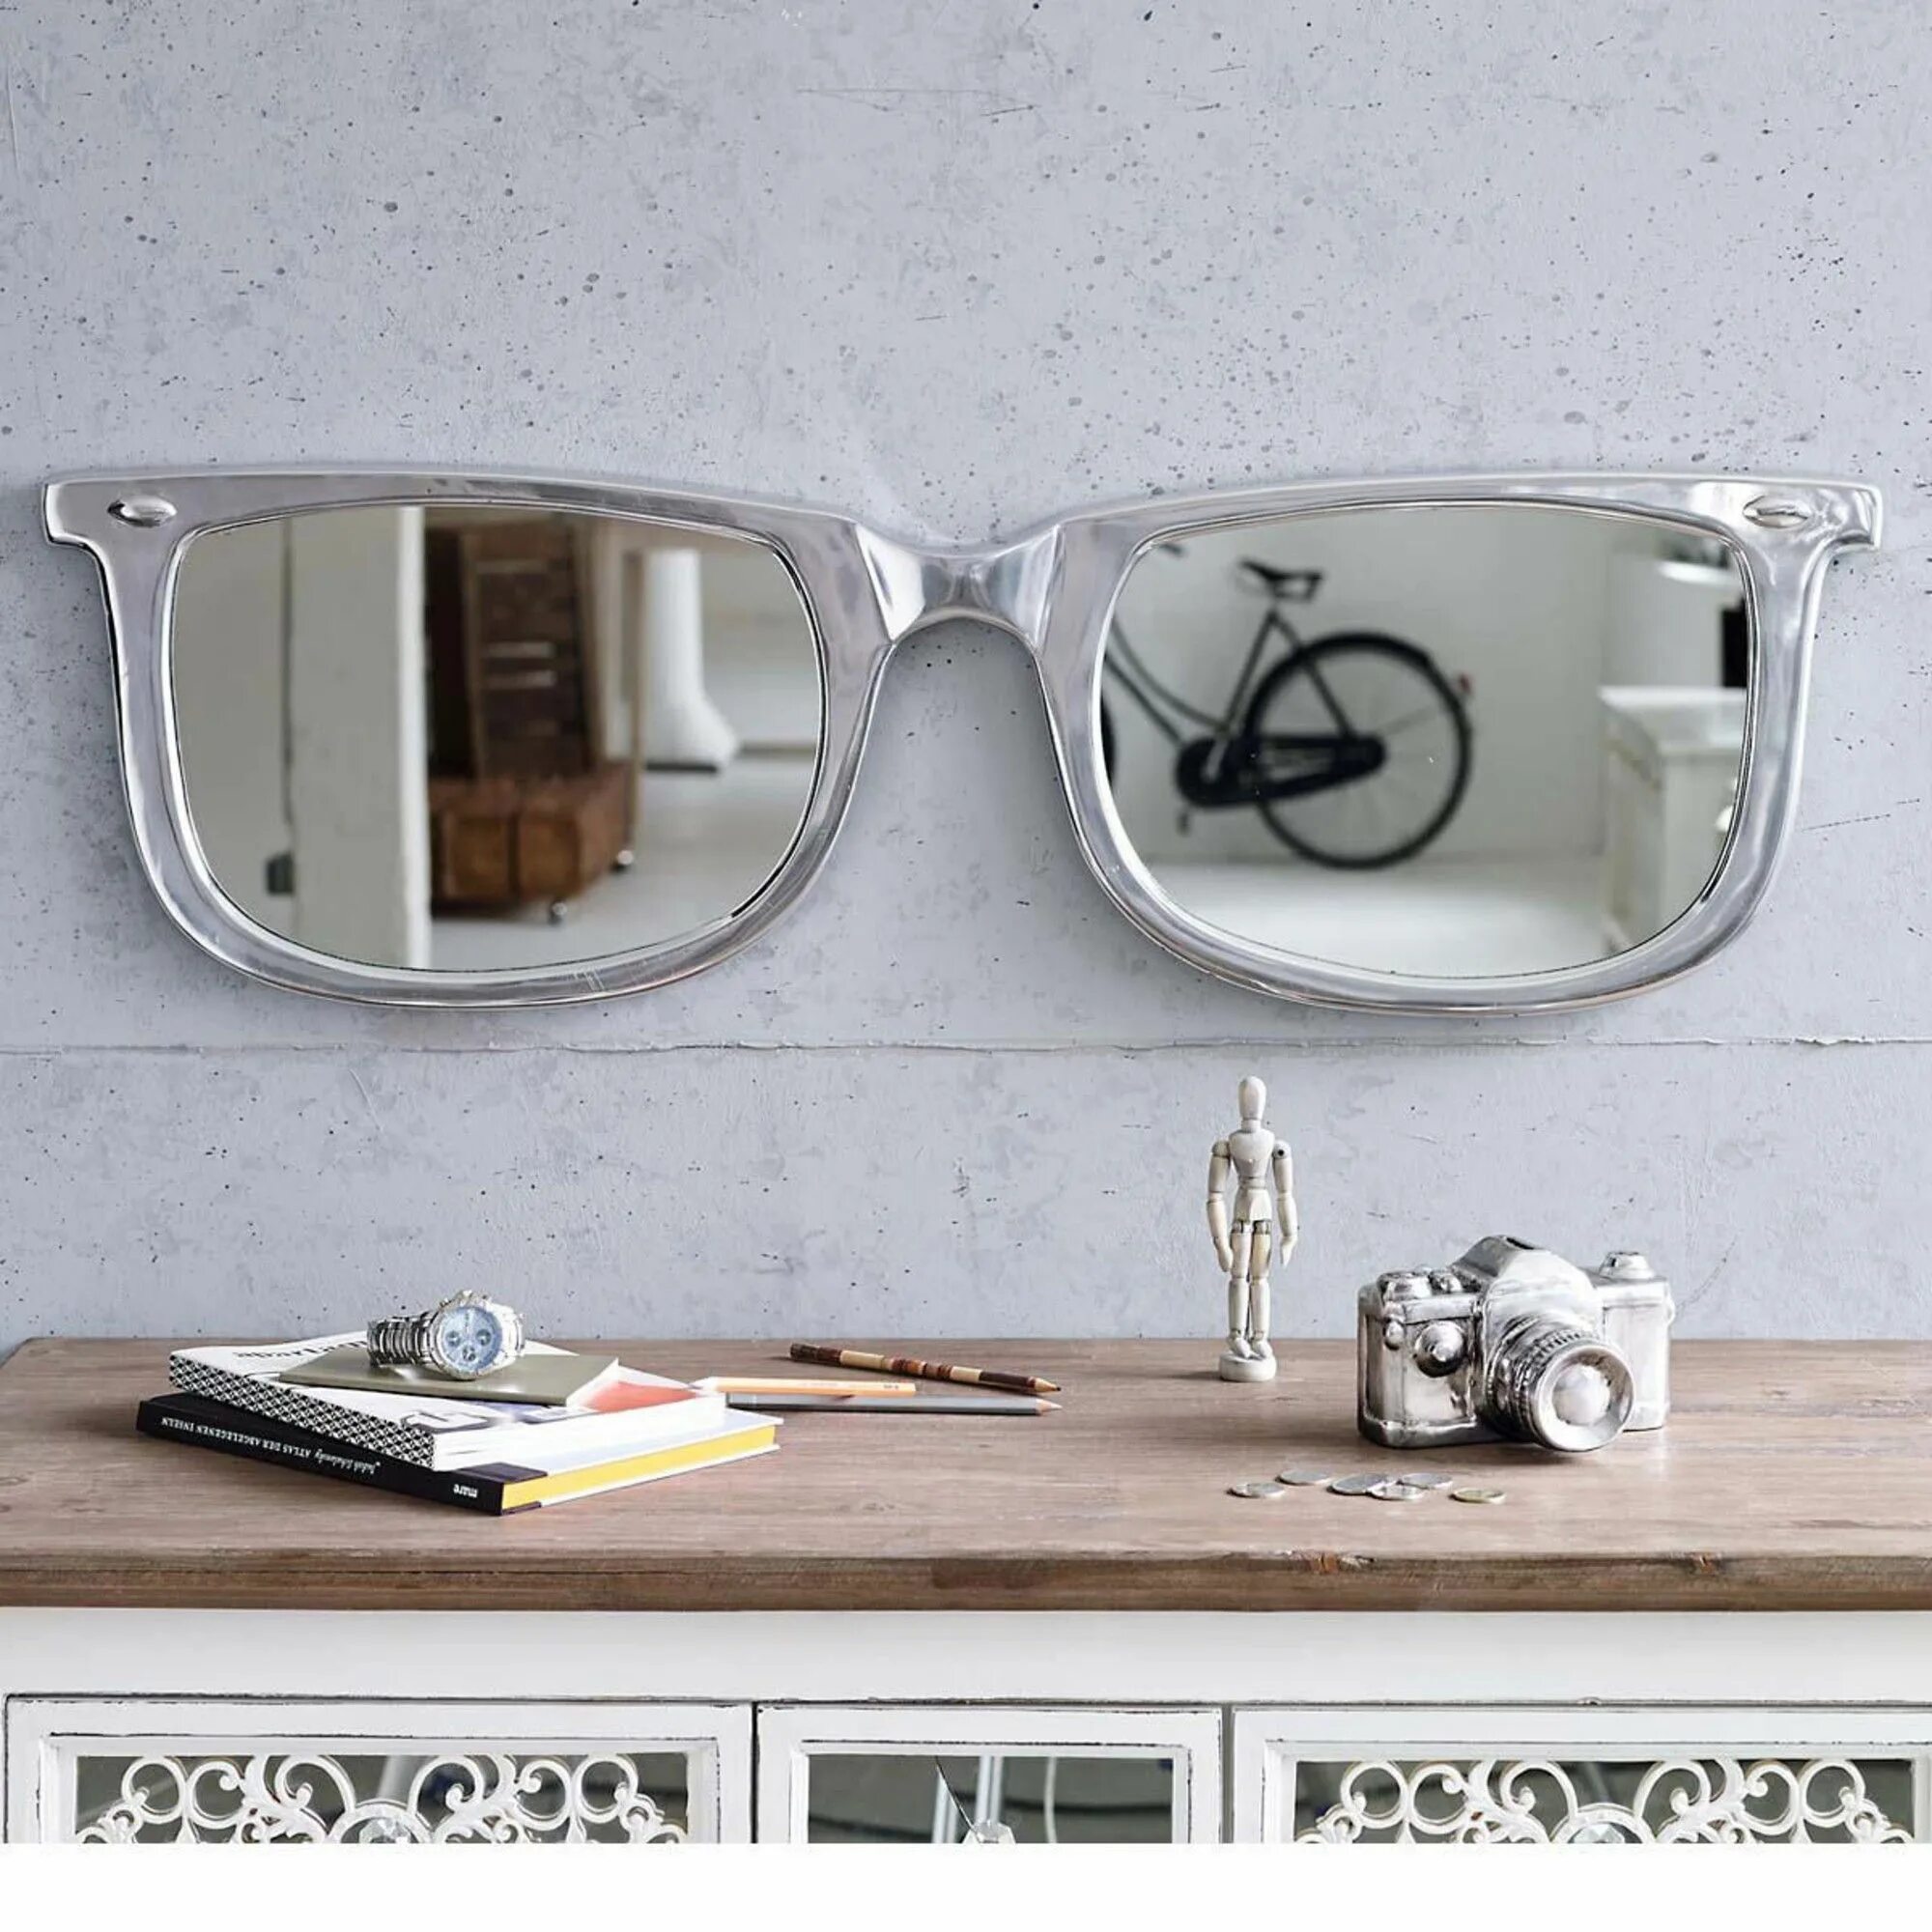 Аксессуары зеркало. Очки в интерьере. Зеркало в форме очков. Солнечные очки в интерьере. Аксессуары для зеркал.